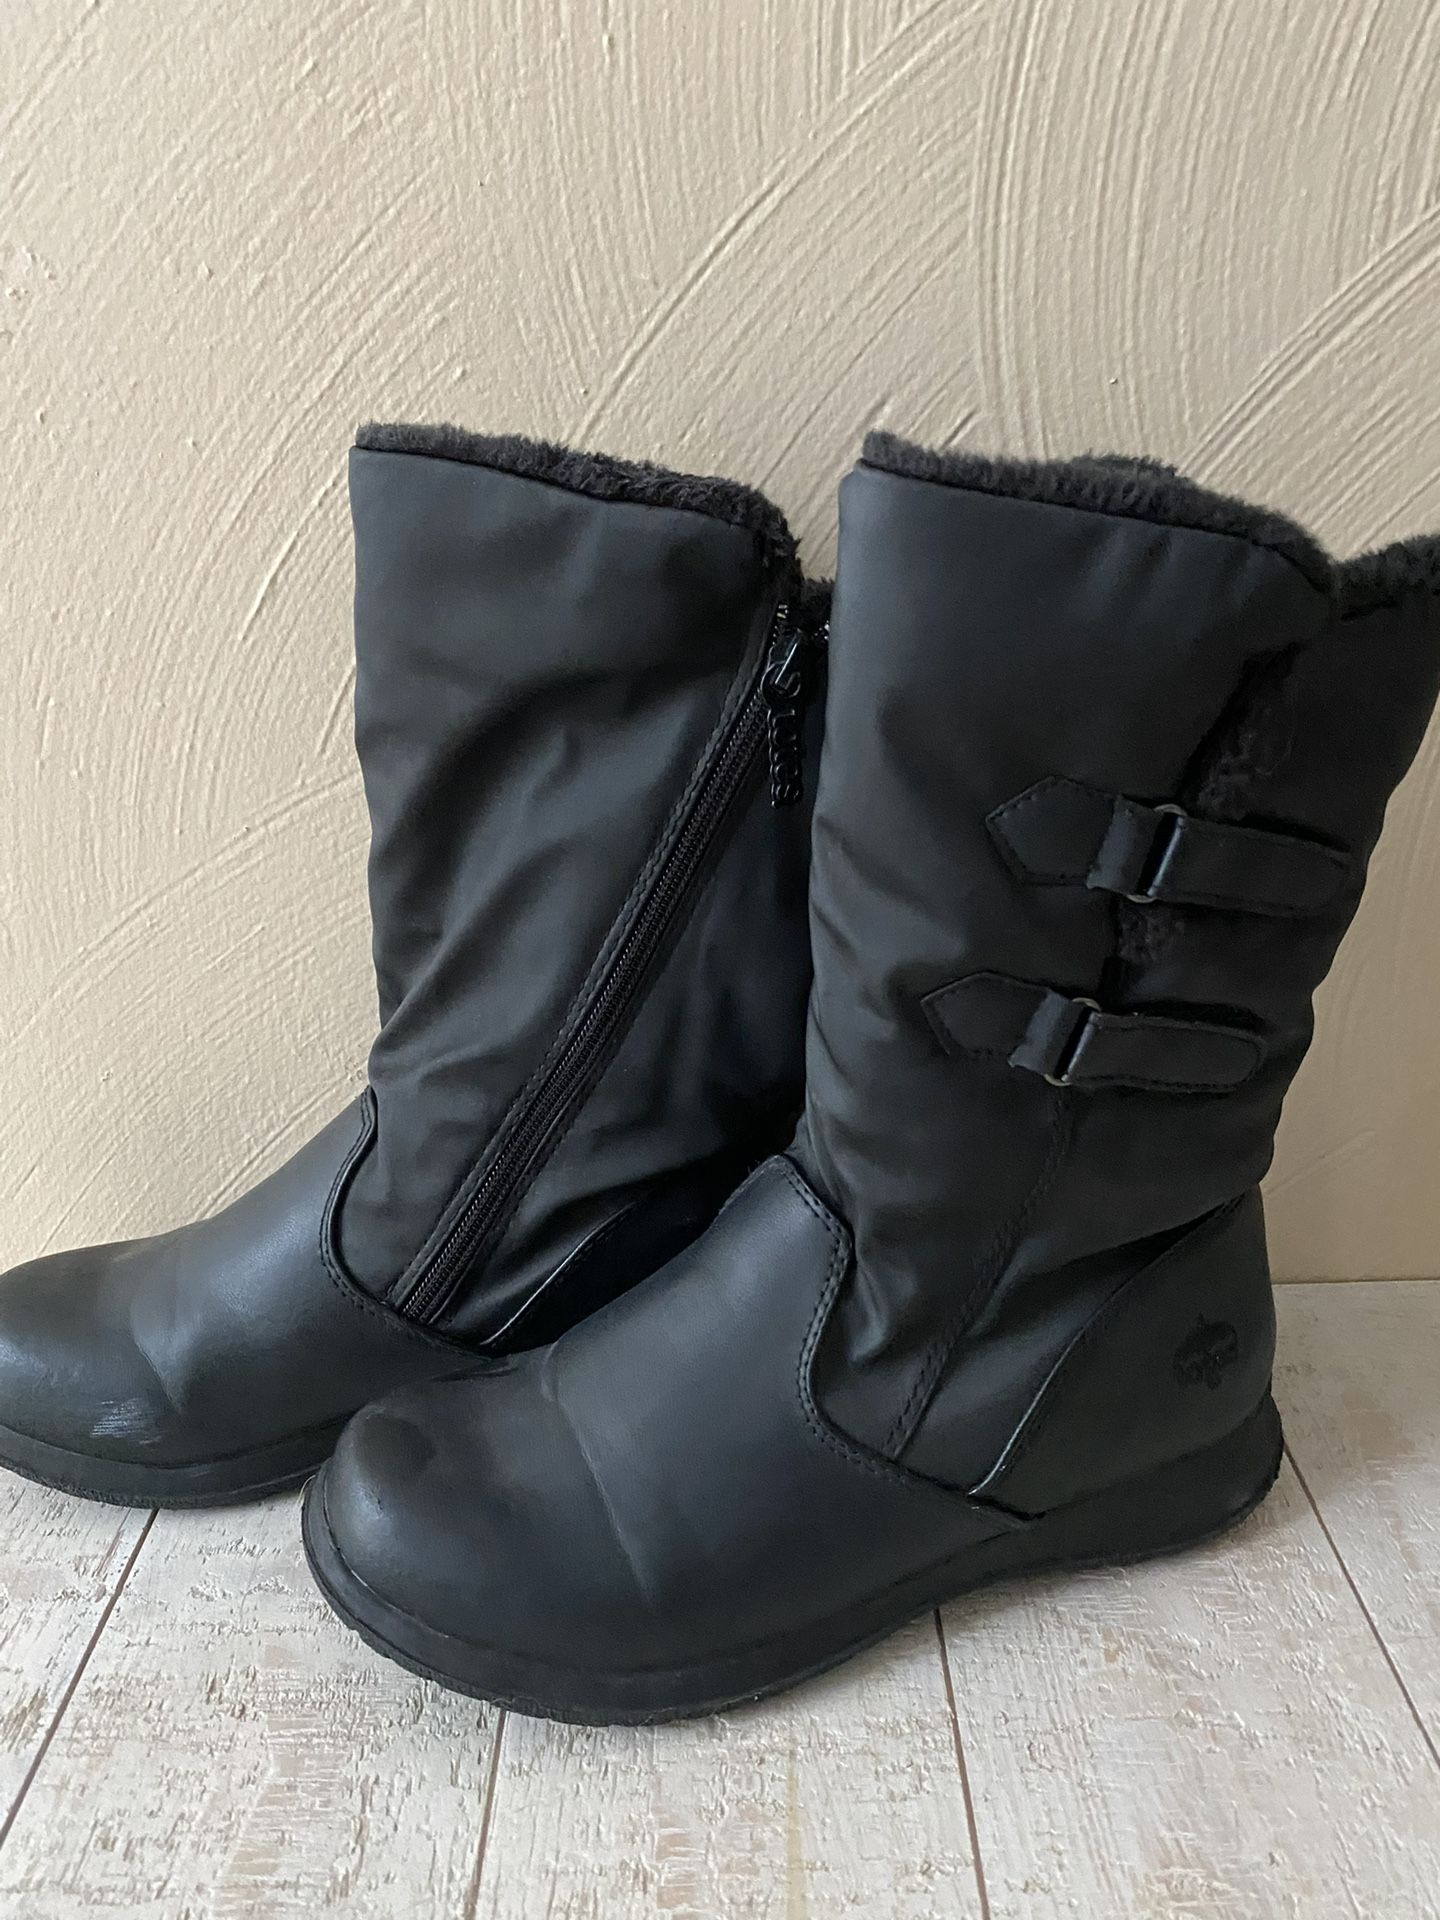 Ladies Snow Boots 